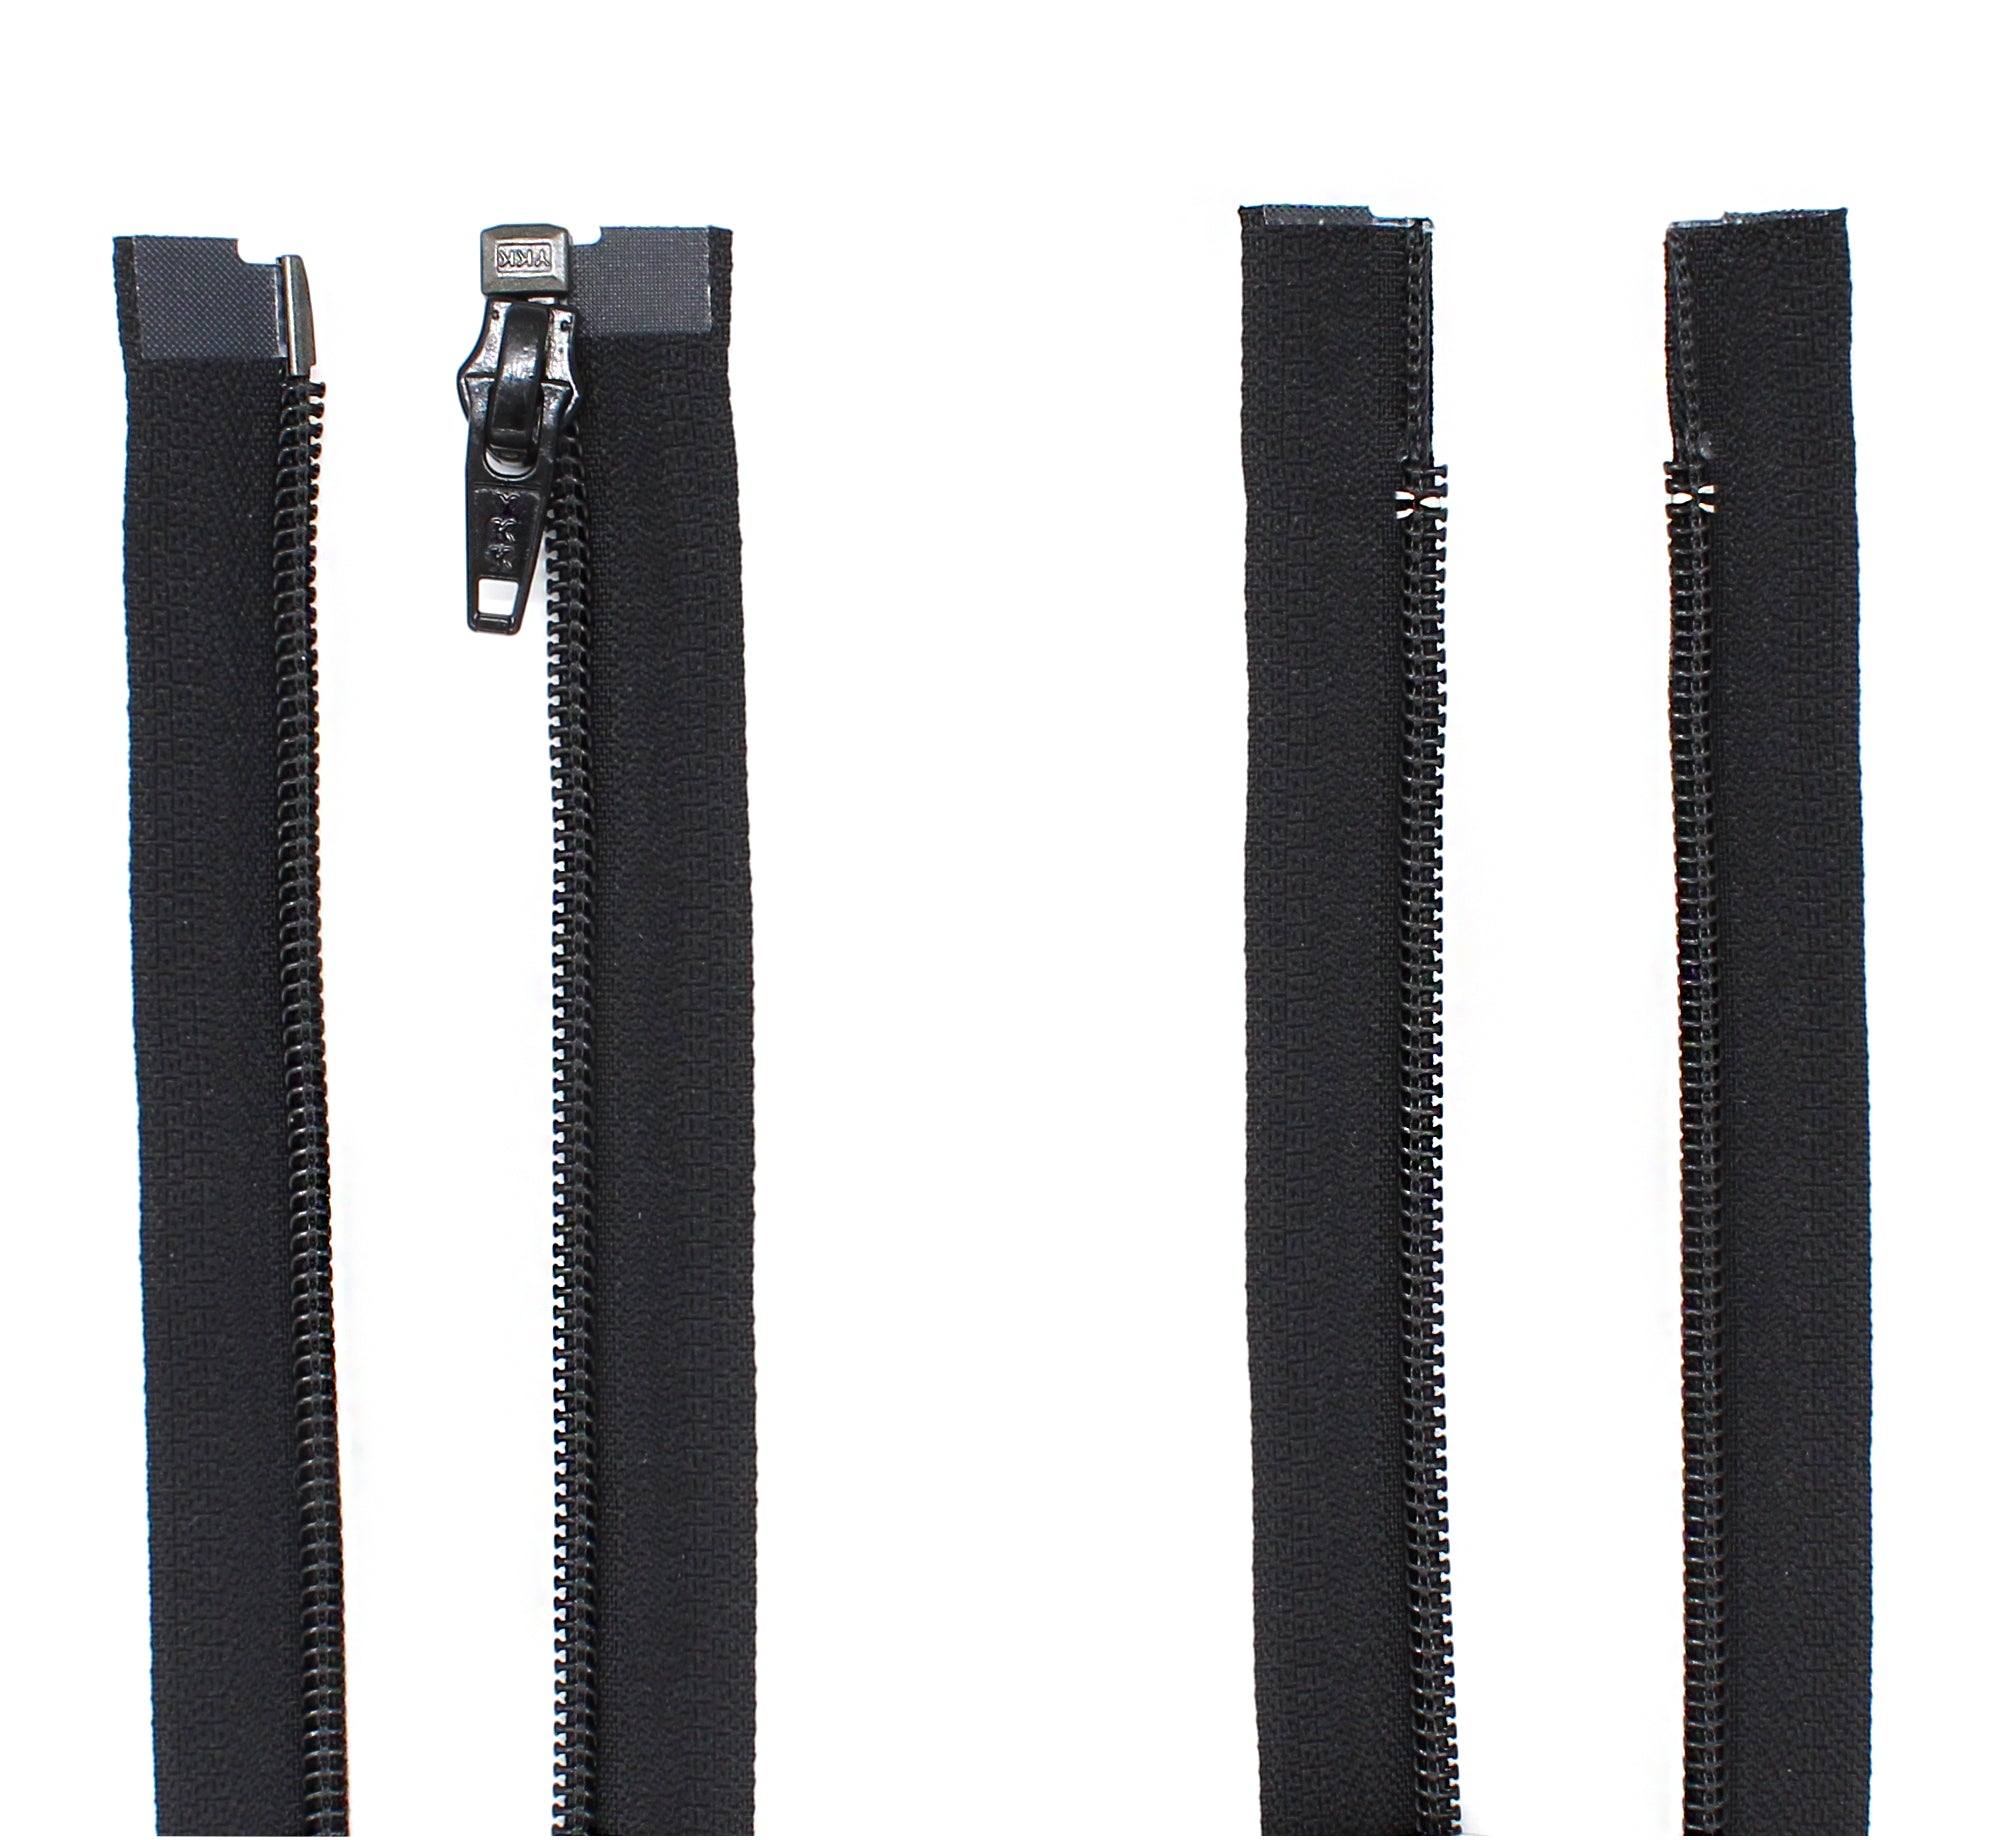 8 inch White Zipper Invisible Zipper White Non Separating Zipper Nylon White Zipper Crafts 8” Zipper for Sewing